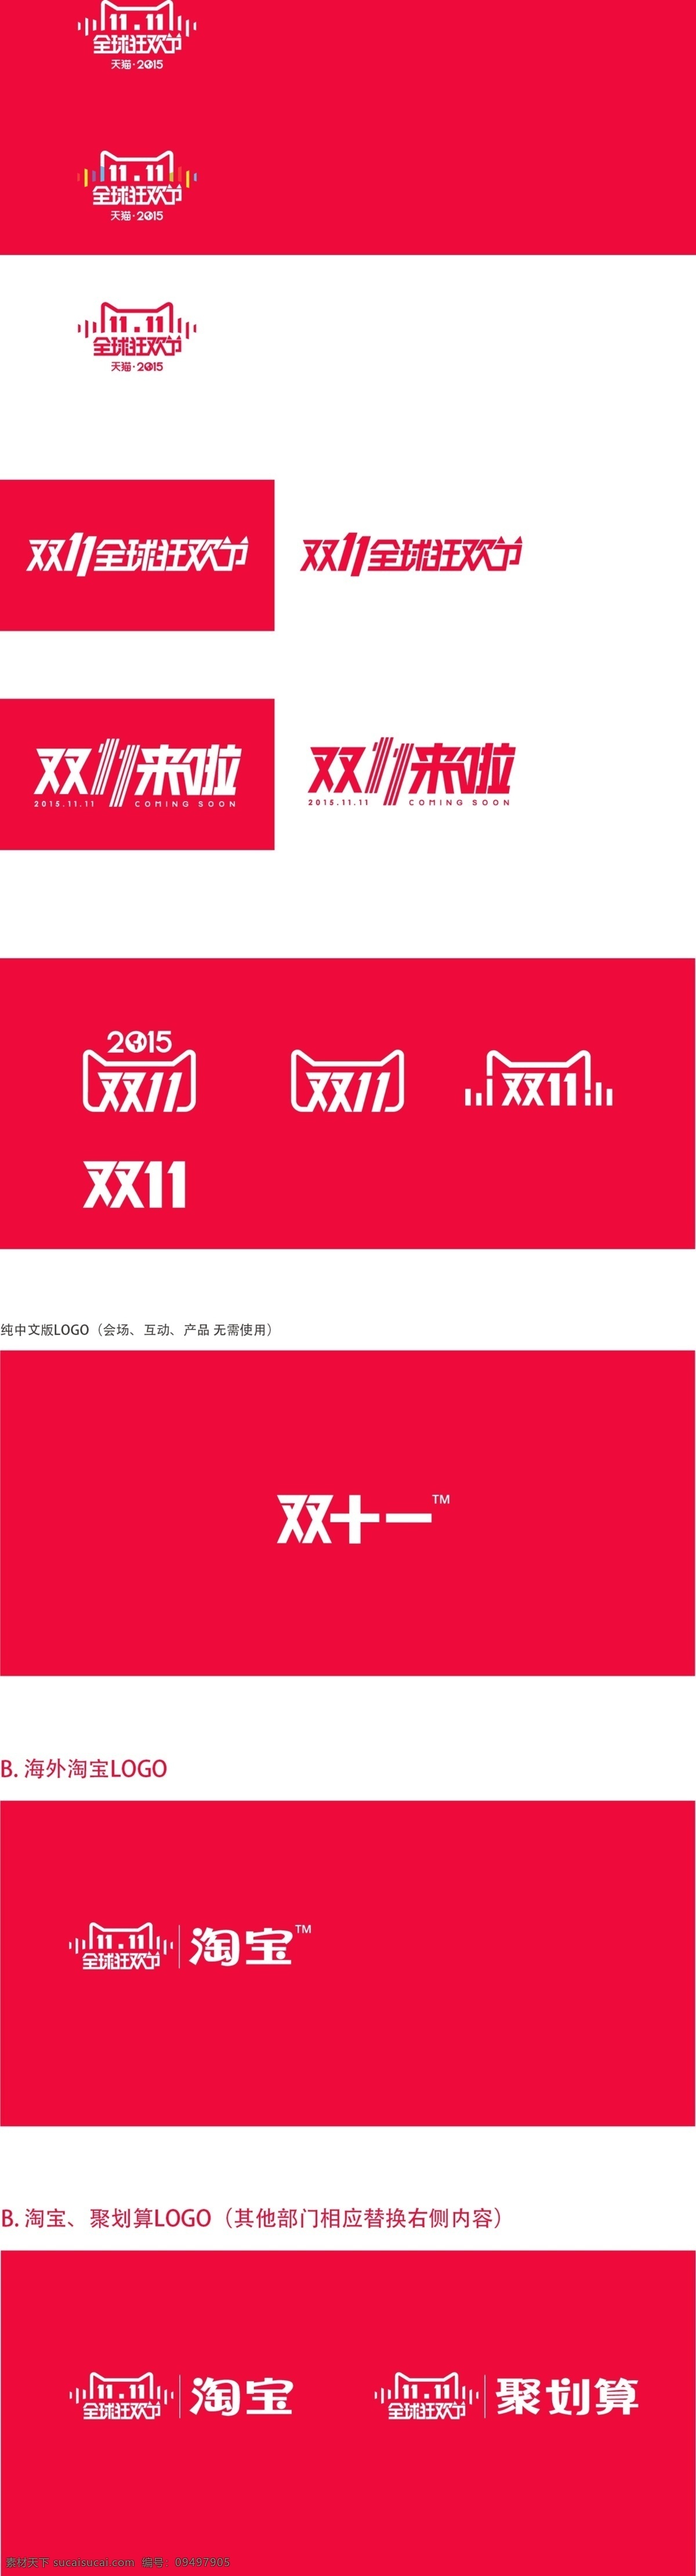 双十 全套 淘宝 logo 图 双 淘宝素材 淘宝设计 淘宝模板下载 红色